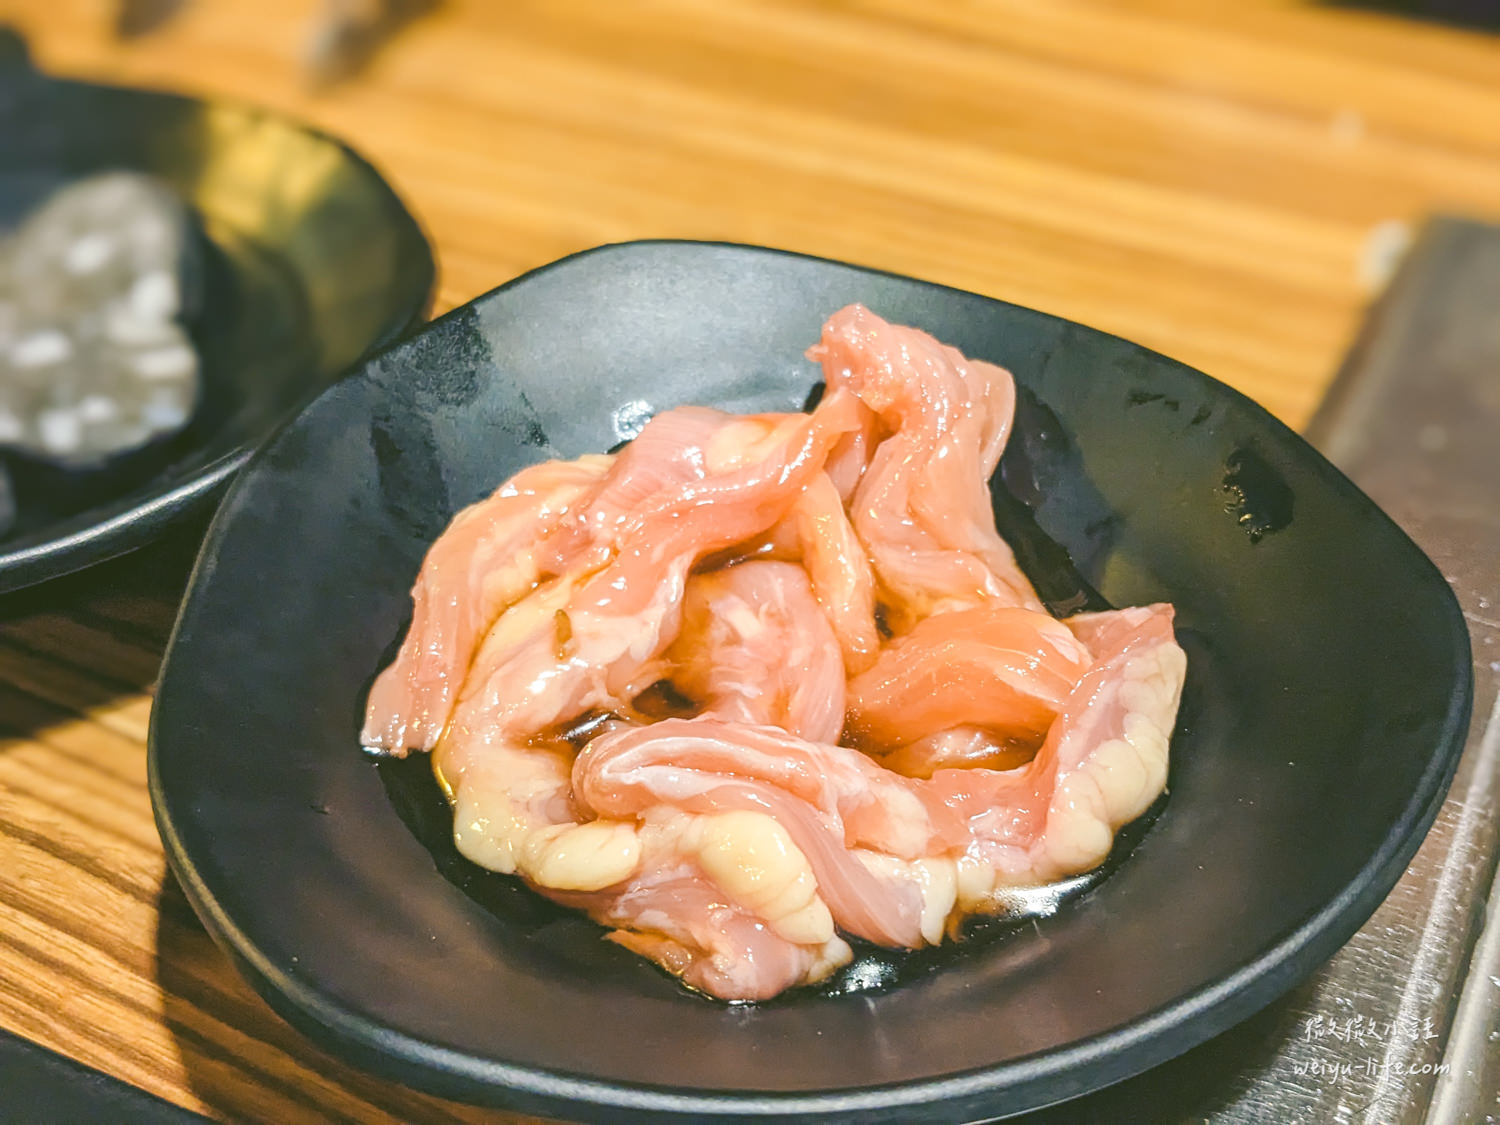 木村堂-燒肉食べ放題 醬燒-雞松阪